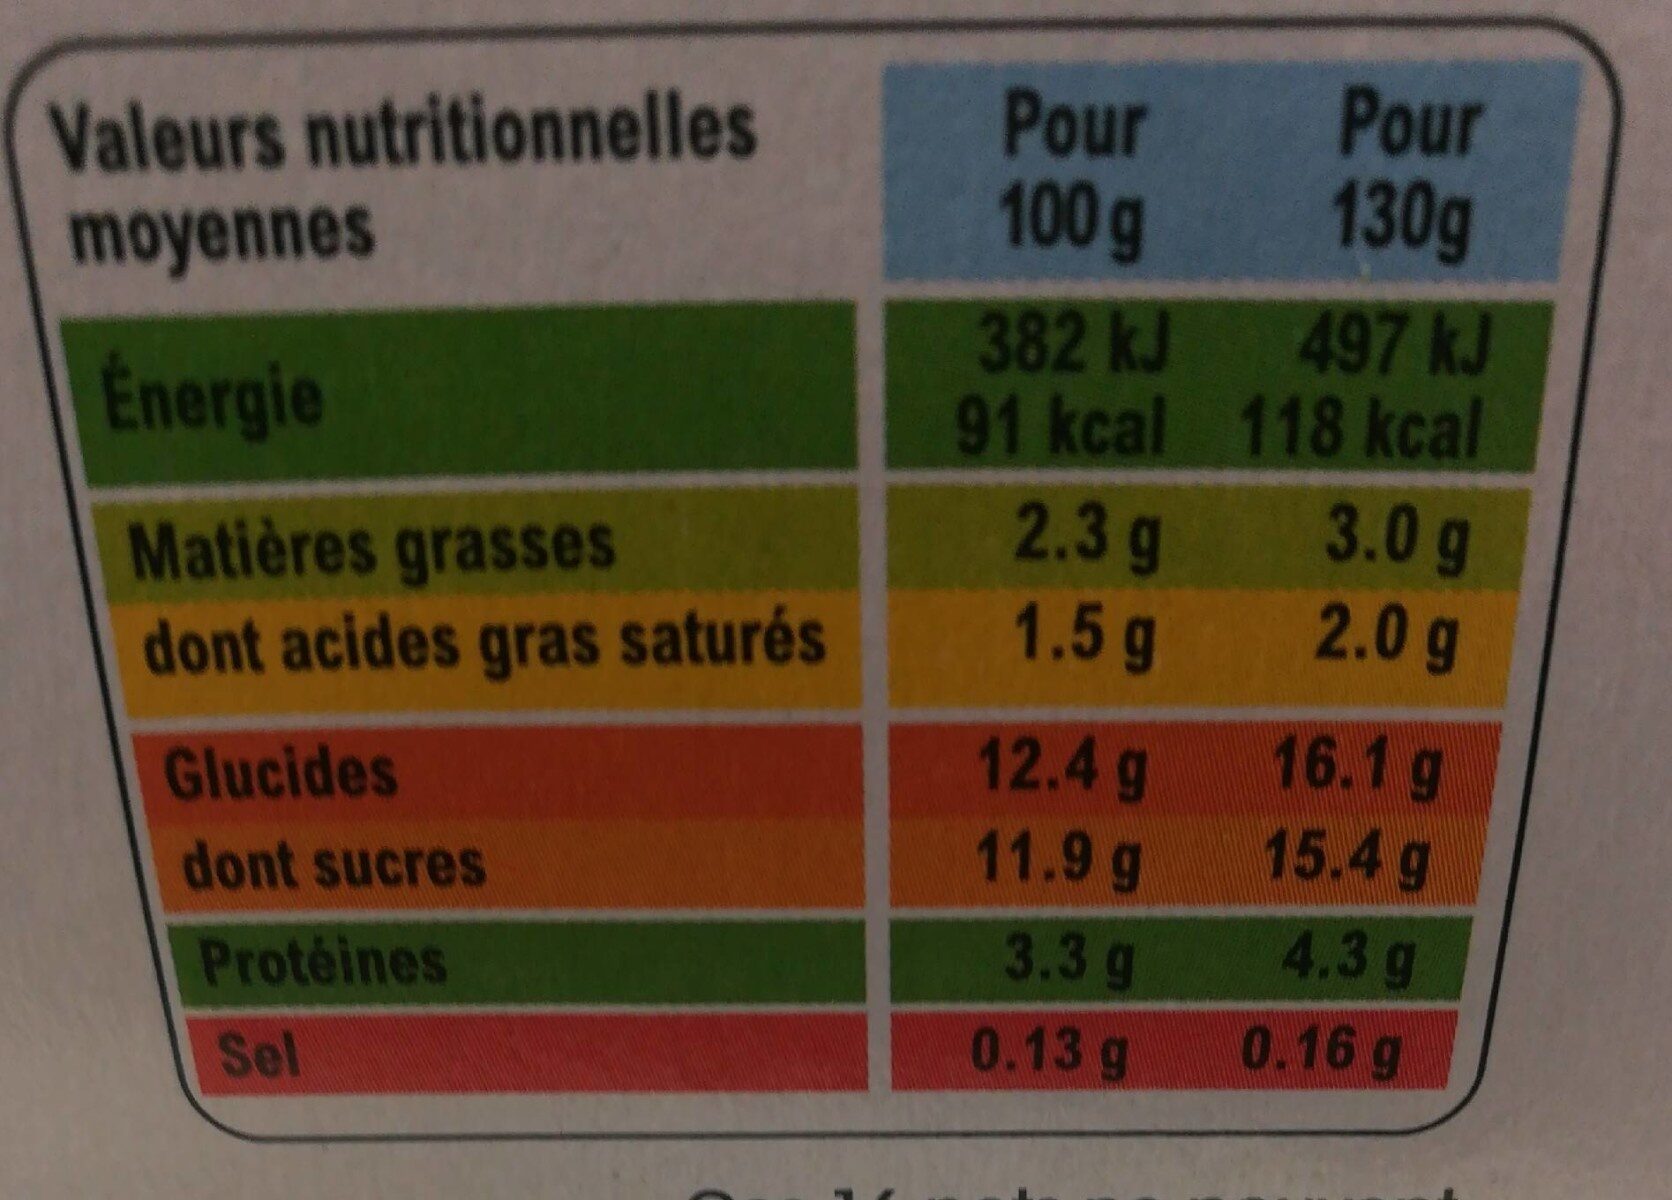 Panier de Yoplait - Información nutricional - fr